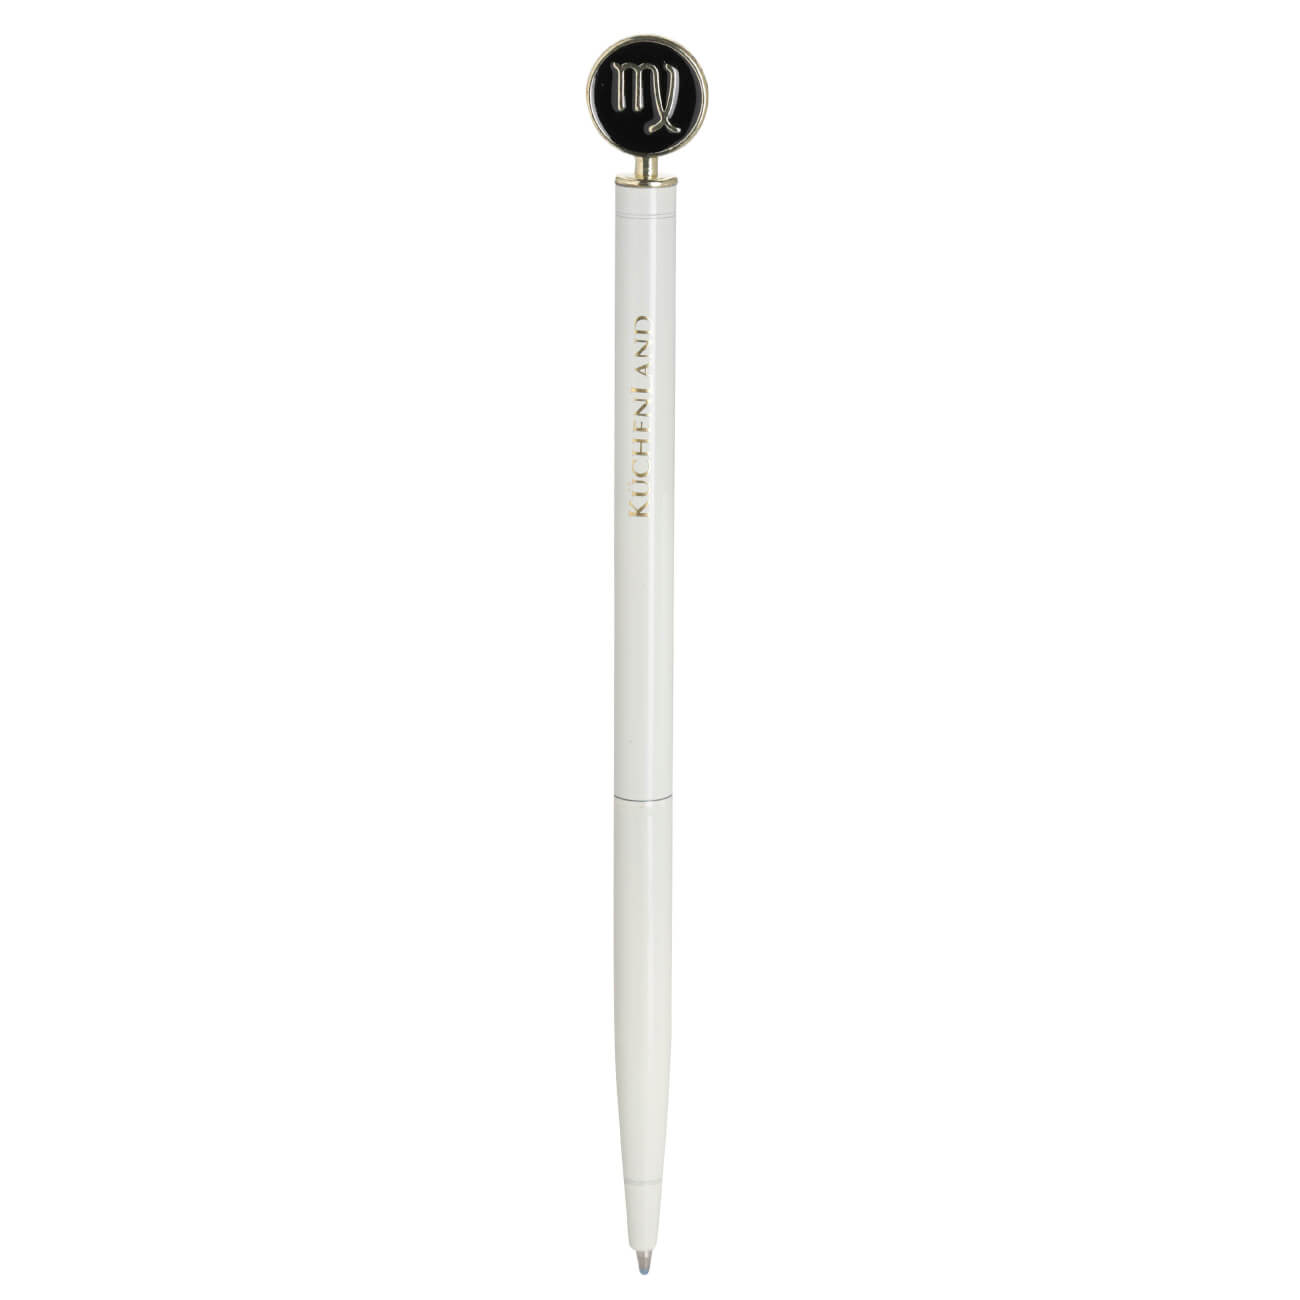 Ручка шариковая, 15 см, с фигуркой, сталь, молочно-золотистая, Дева, Zodiac dueto gun ручка стилус